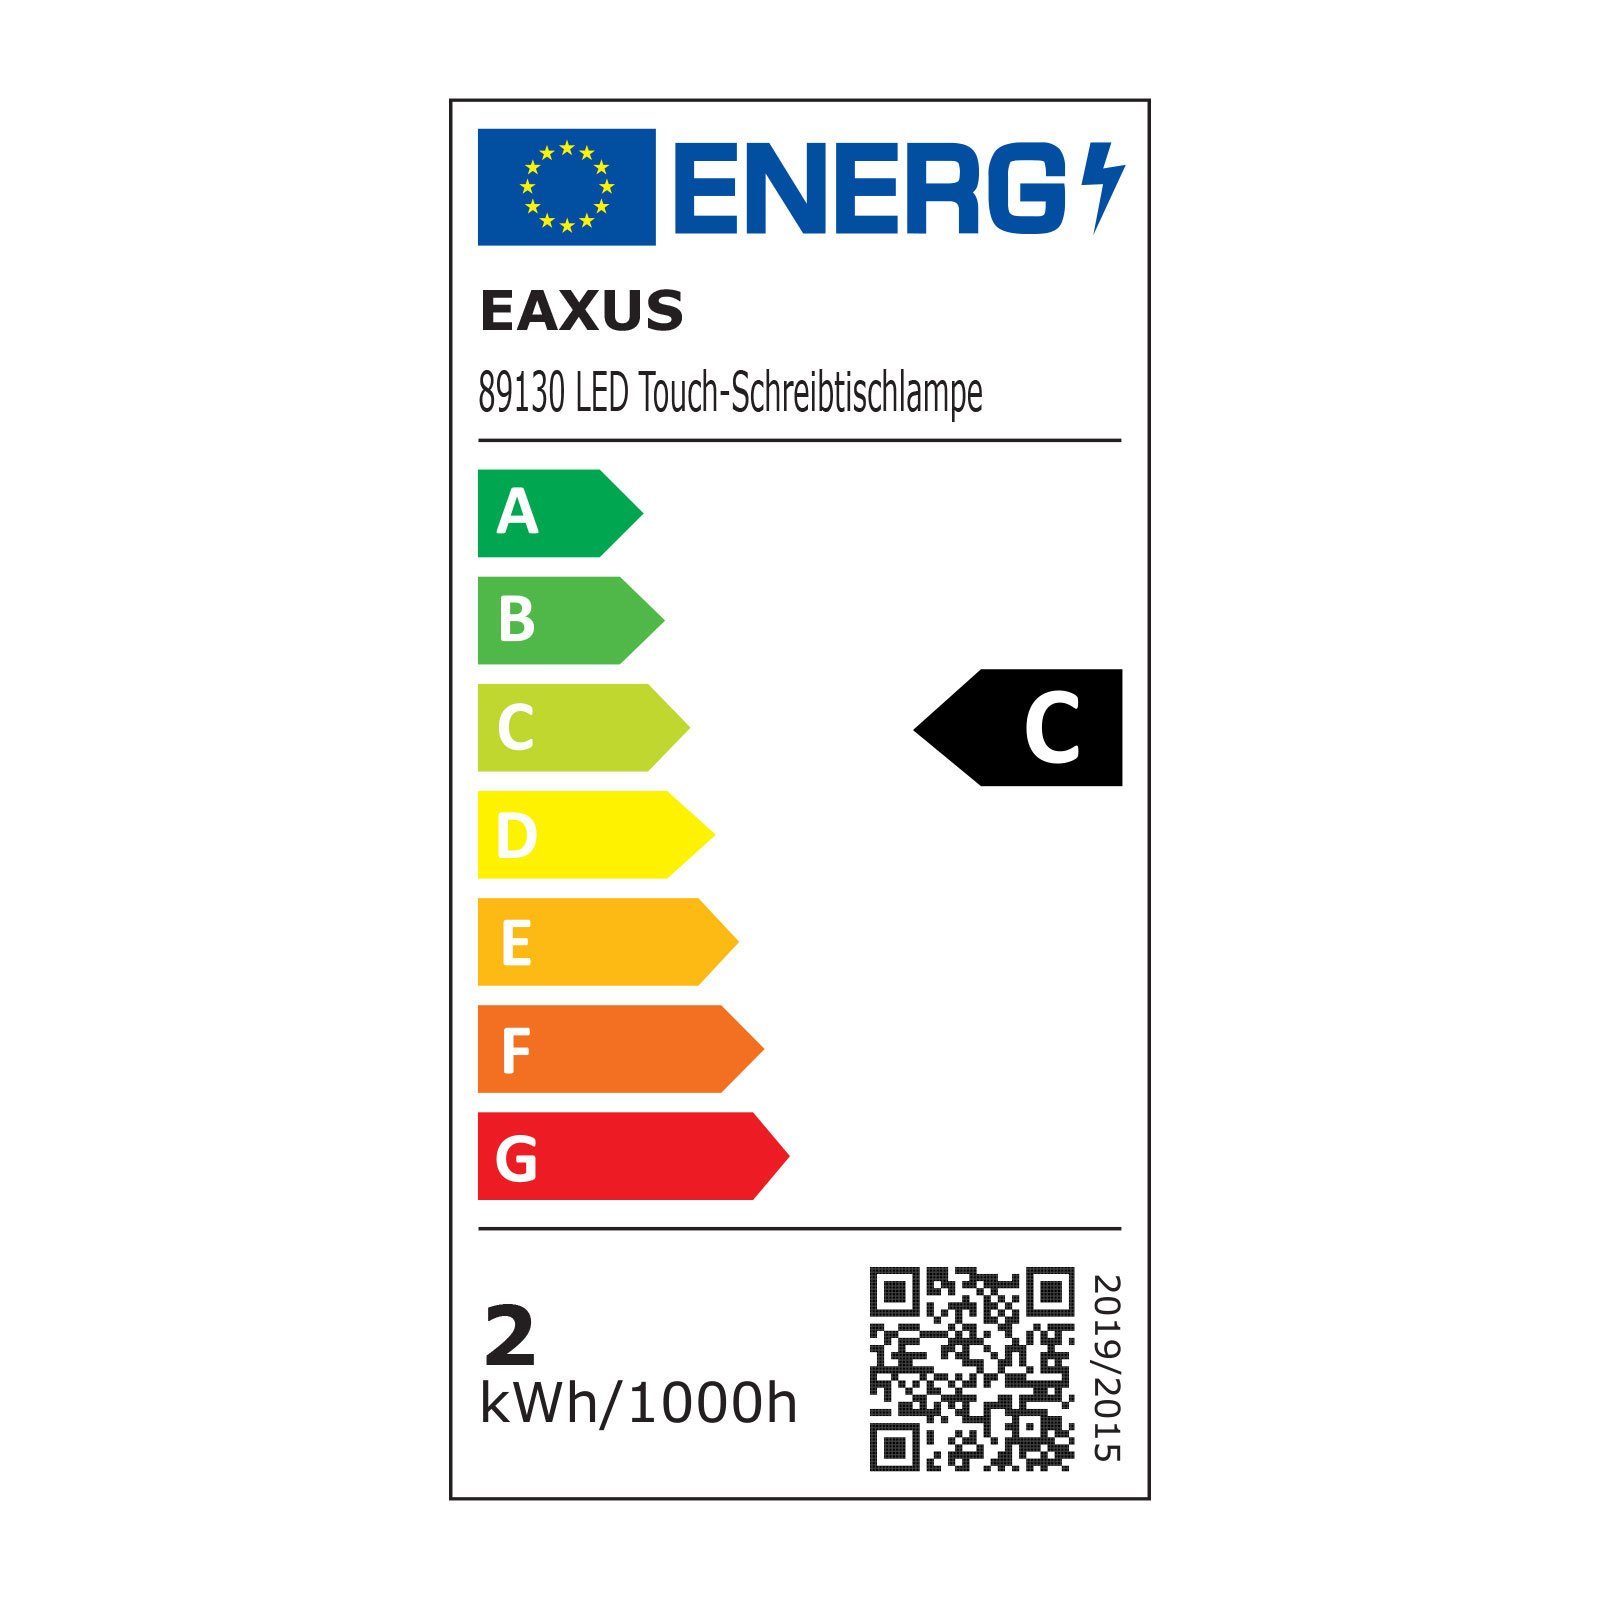 EAXUS LED LED 4000/2500 mit fest C, Kelvin, mit Display Energieffizienzklasse integriert, Schreibtischlampe und Separates Display Nachtlicht Wecker-Funktion, Temperatur, Tischleuchte Induktionsladefunktion, Uhrzeit, Datum